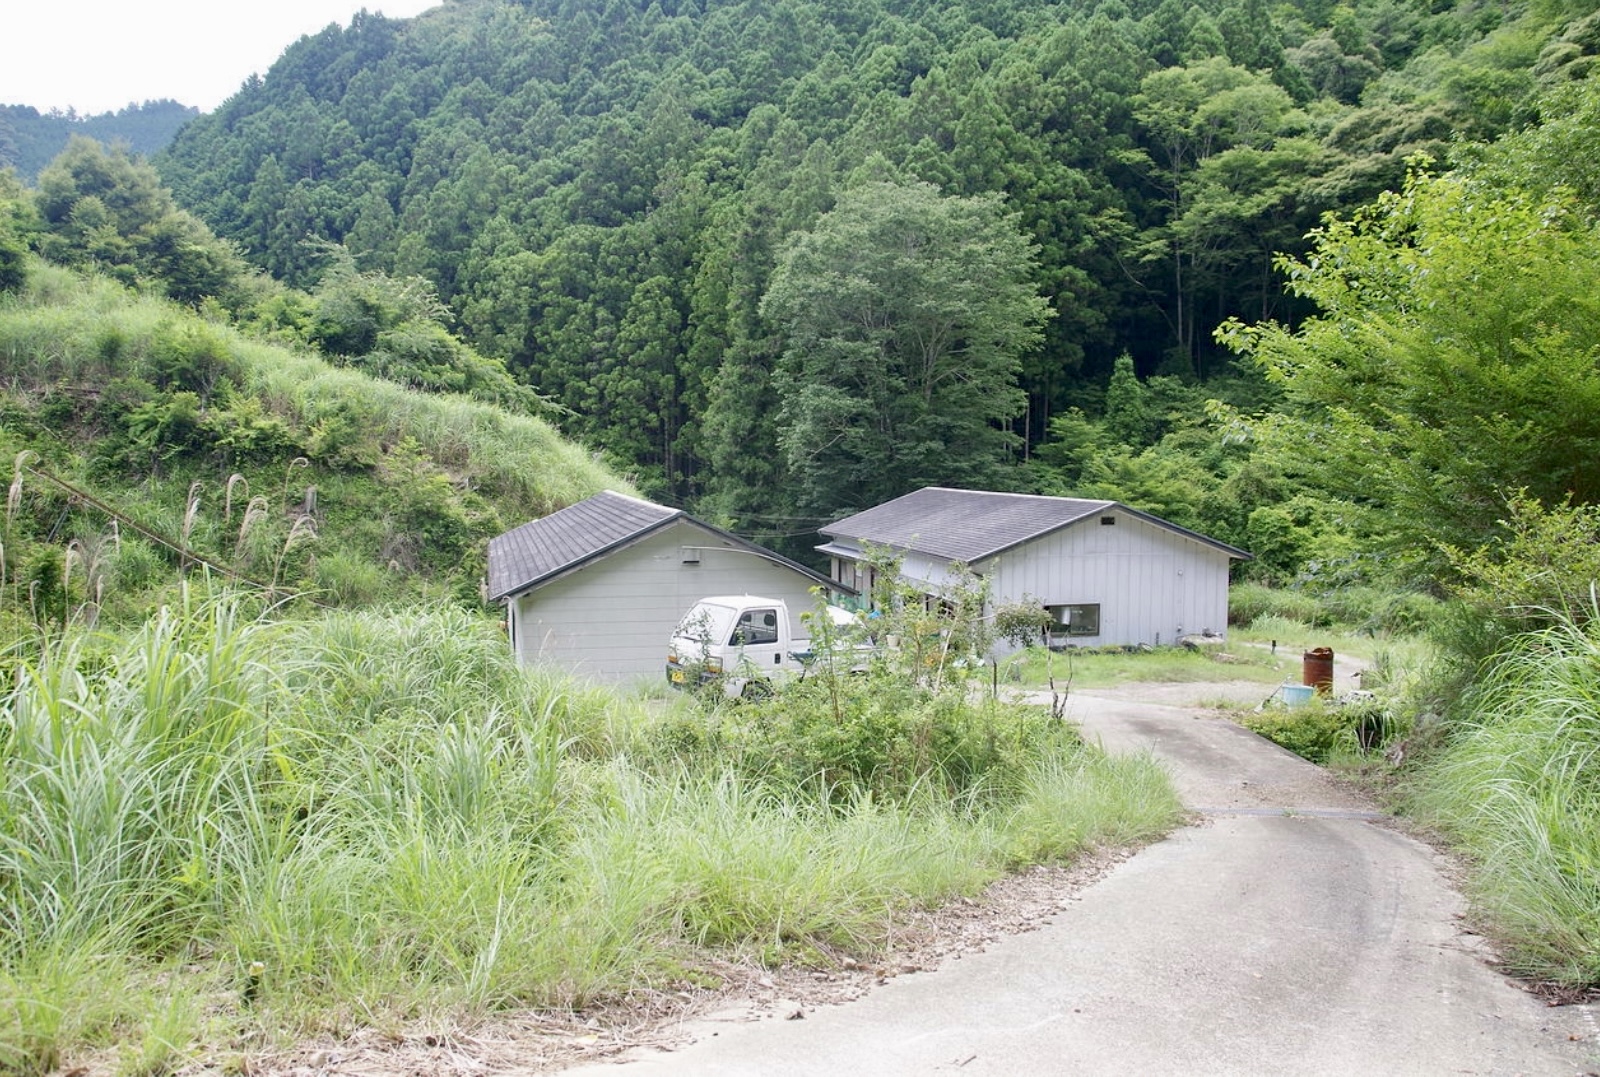   和歌山県田辺市にある50万坪の山林です。4900万円(応相談)